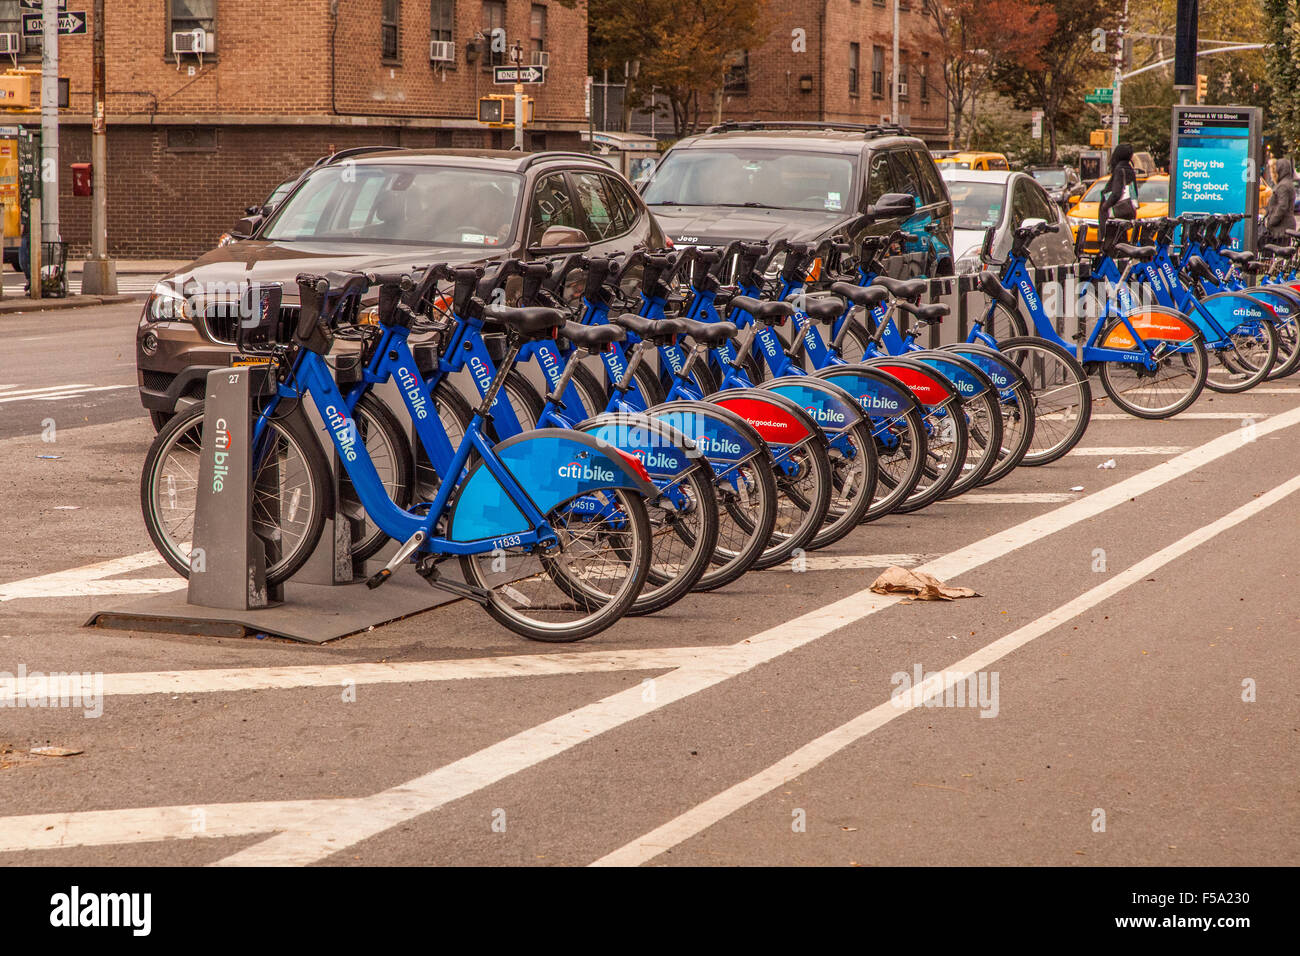 Citi-bike station, Citibike est un système de partage de vélos ou de vélo-partage, basé à New York City, États-Unis d'Amérique. Banque D'Images